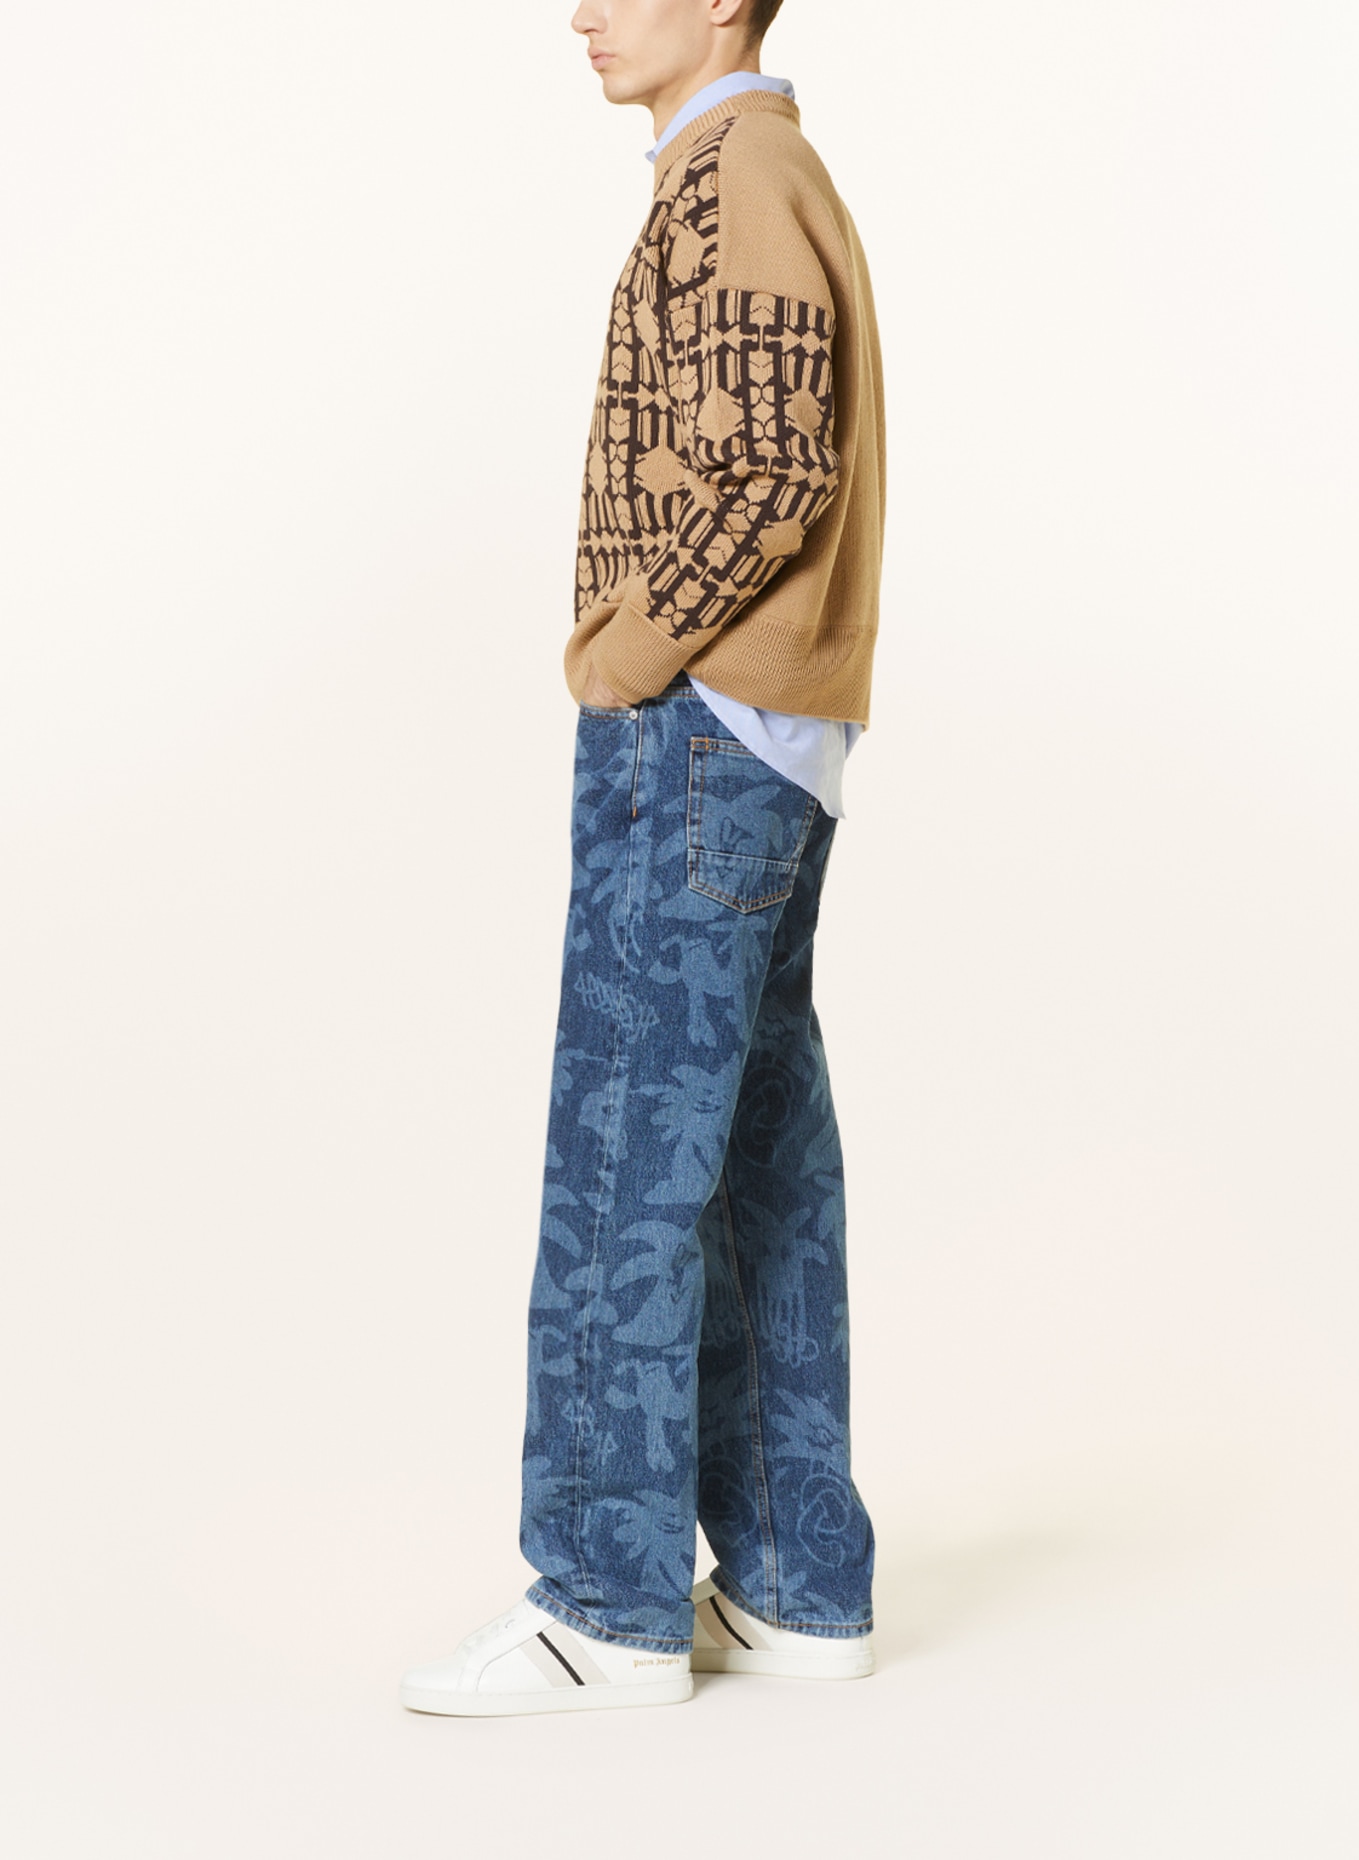 Louis Vuitton X Supreme Camouflage Monogram Jacquard Regular Fit Jeans XL